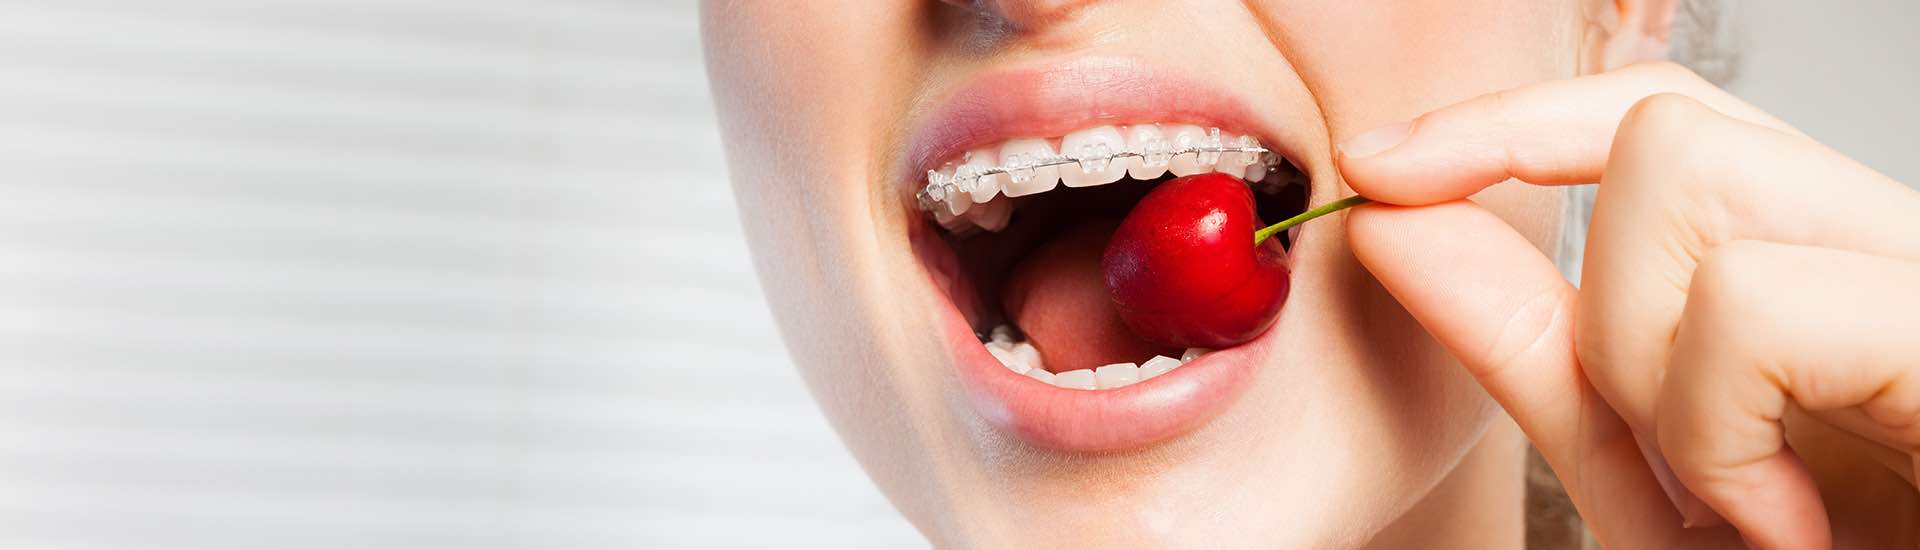 Co jeść, aby przyspieszyć leczenie ortodontyczne?